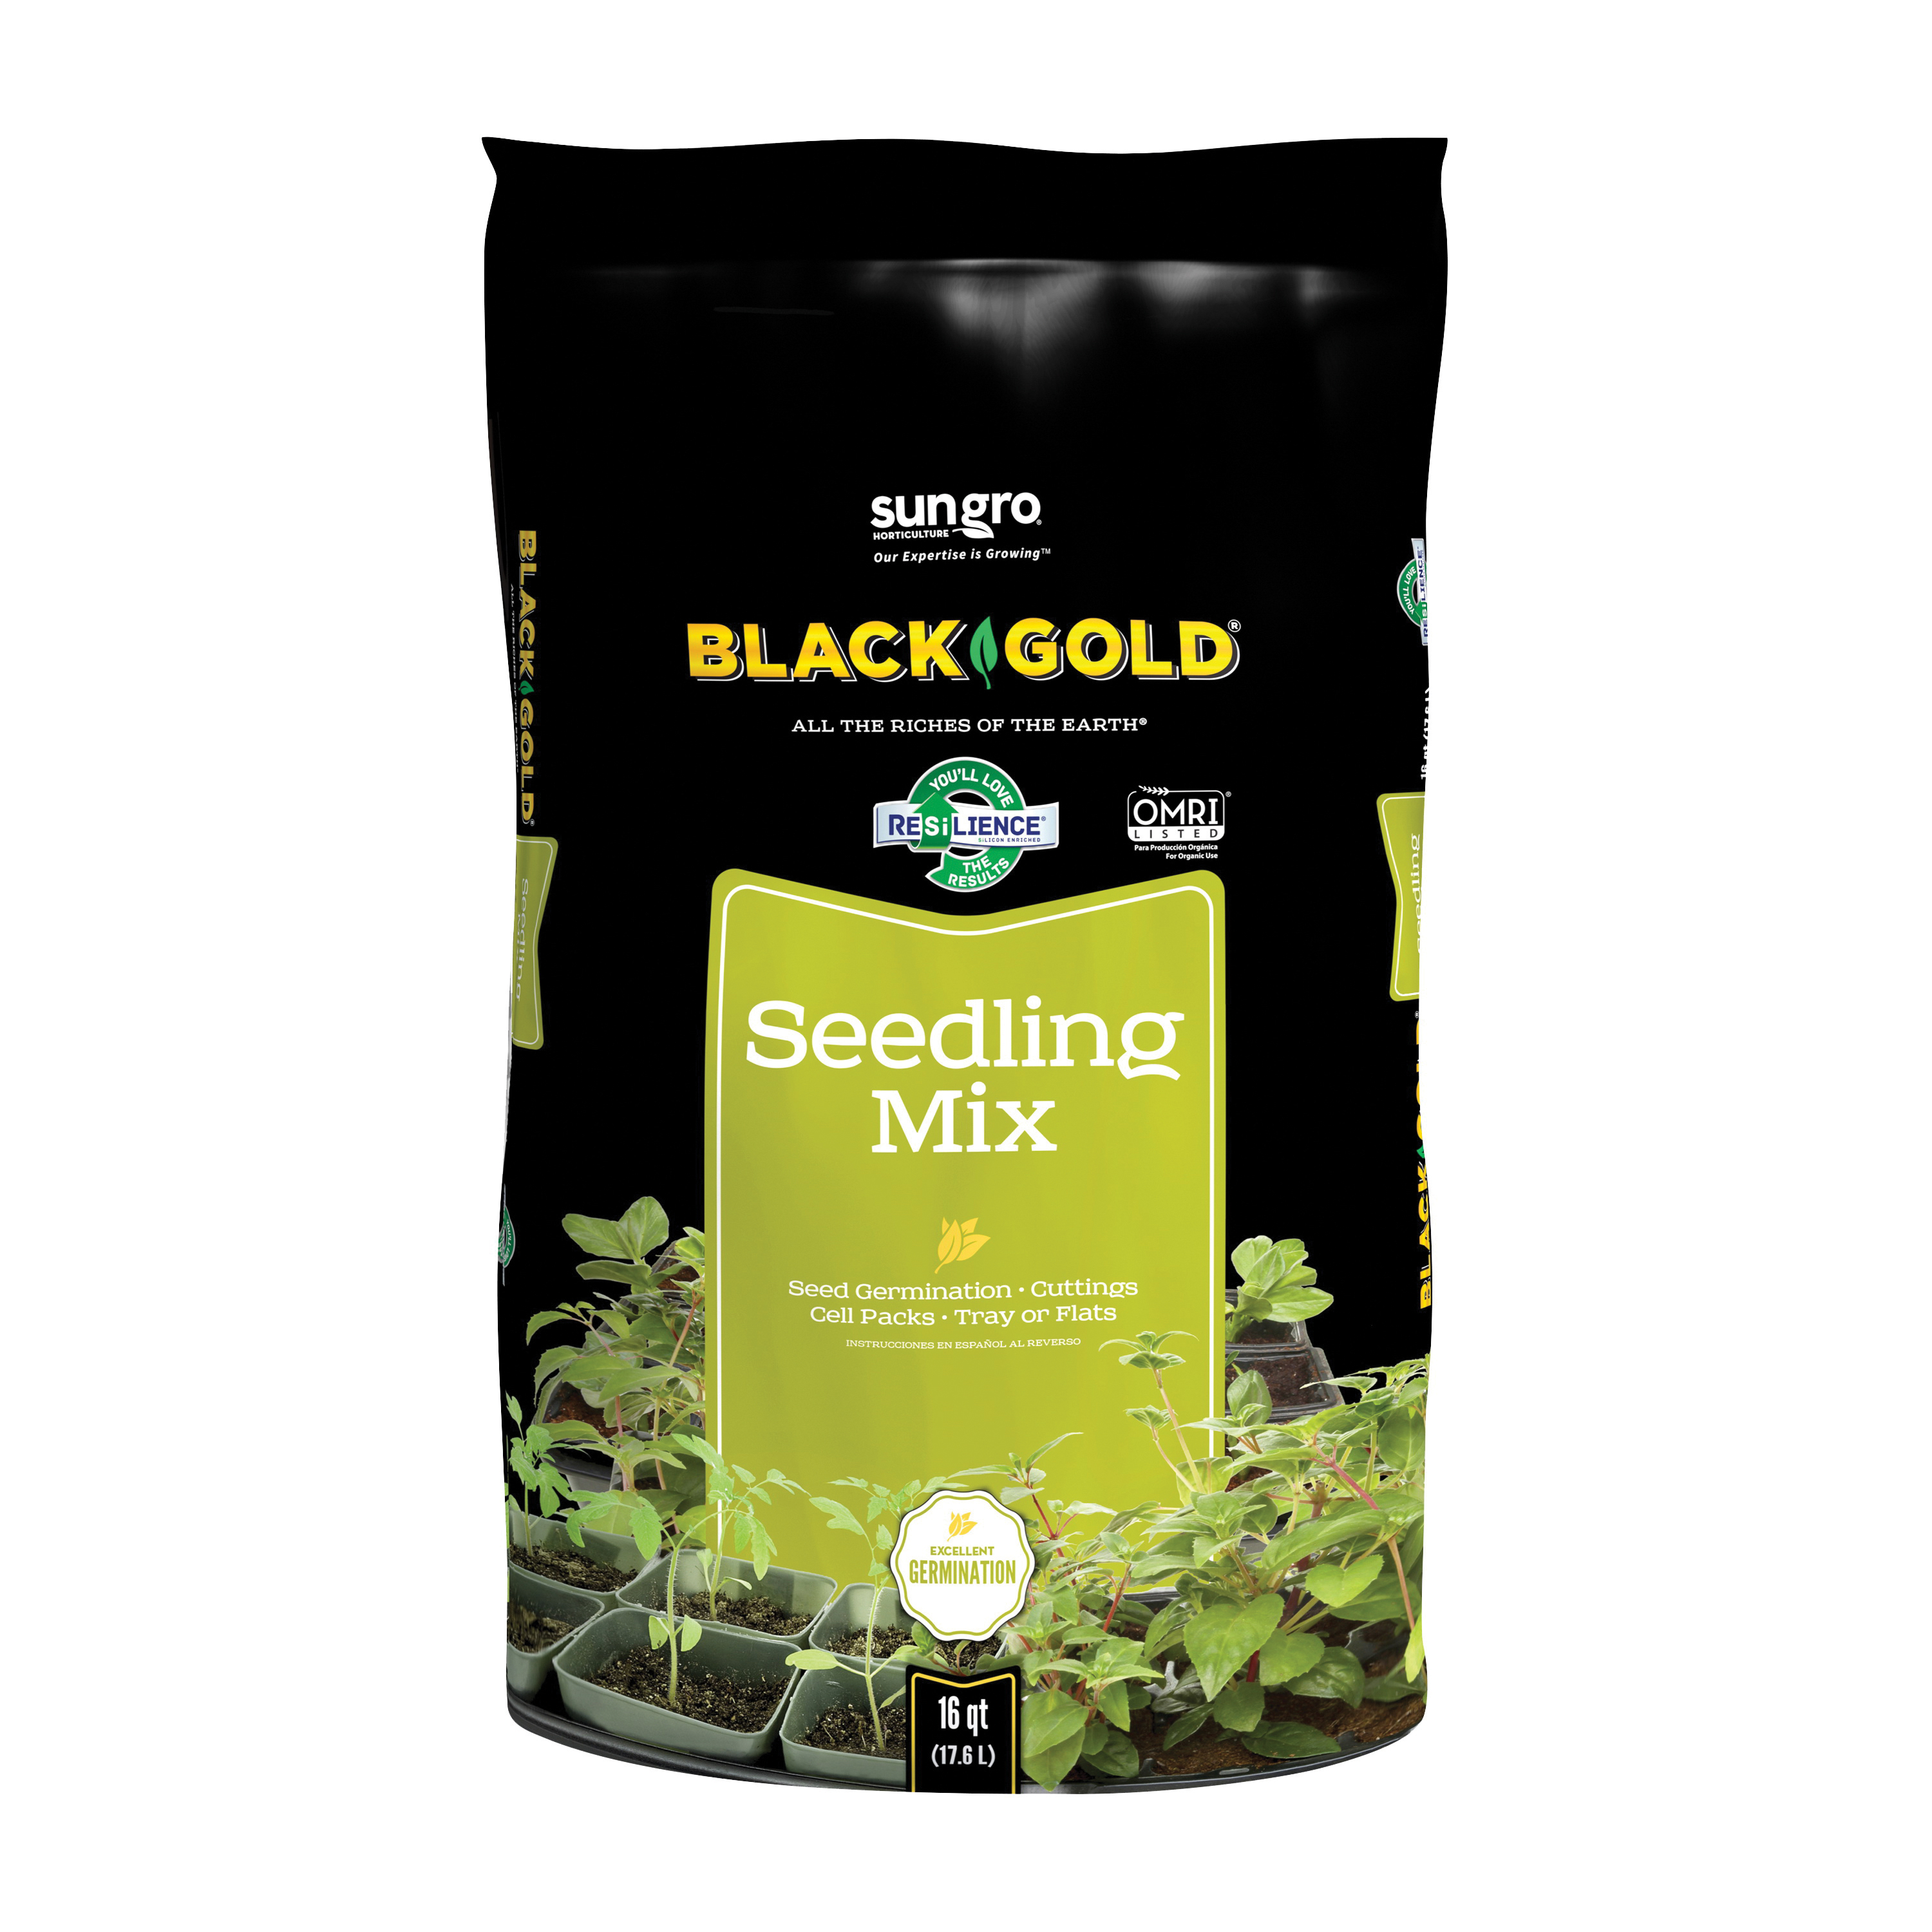 sun gro BLACK GOLD 1411002 16 QT P Seedling Mix, 16 qt Bag - 1